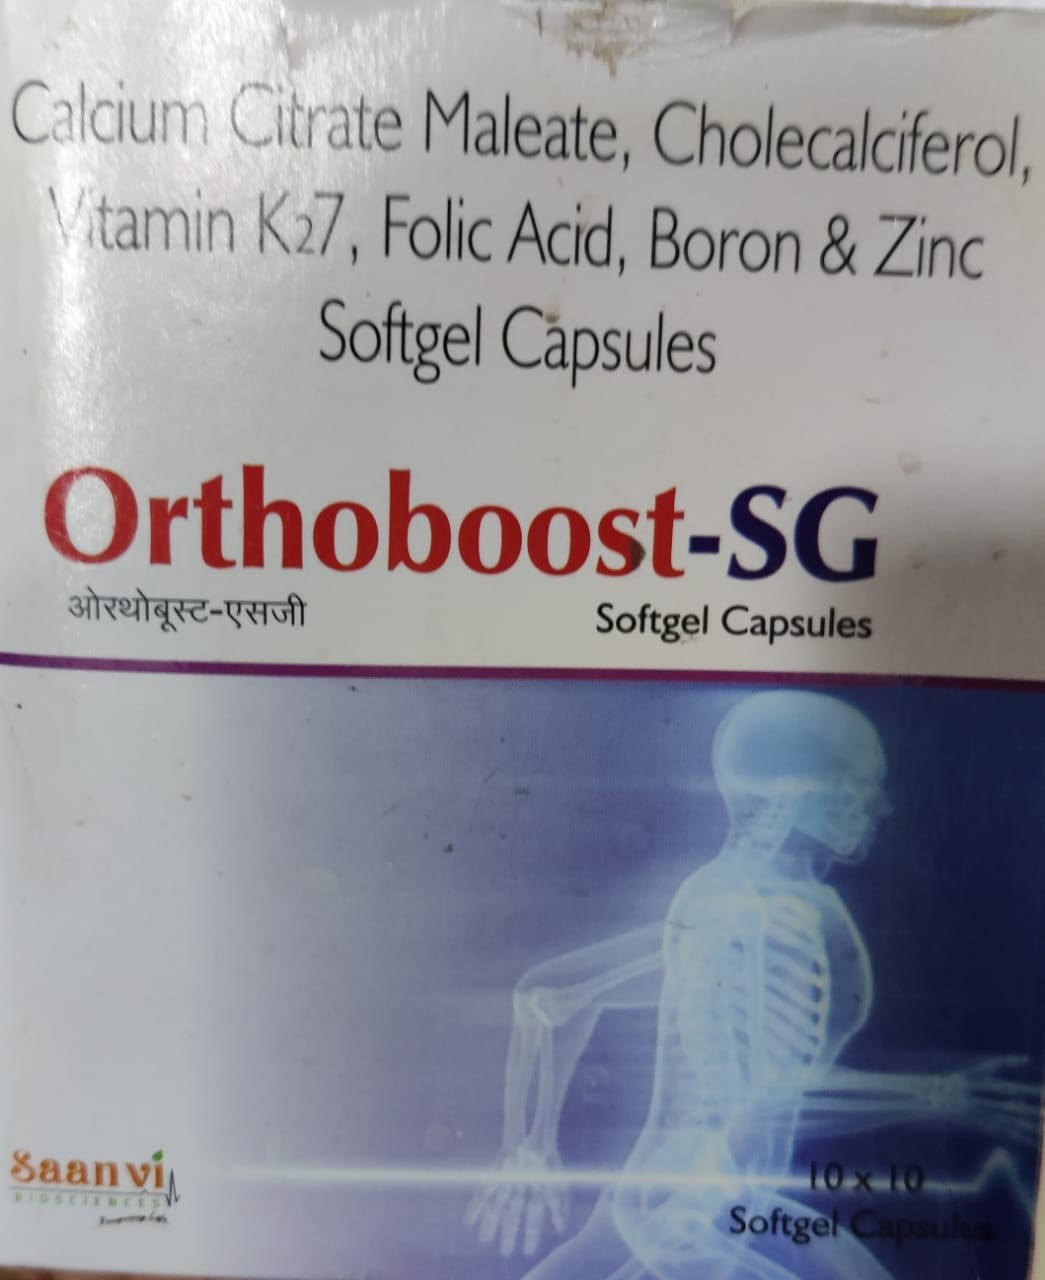 Orthoboost Sg Capsules